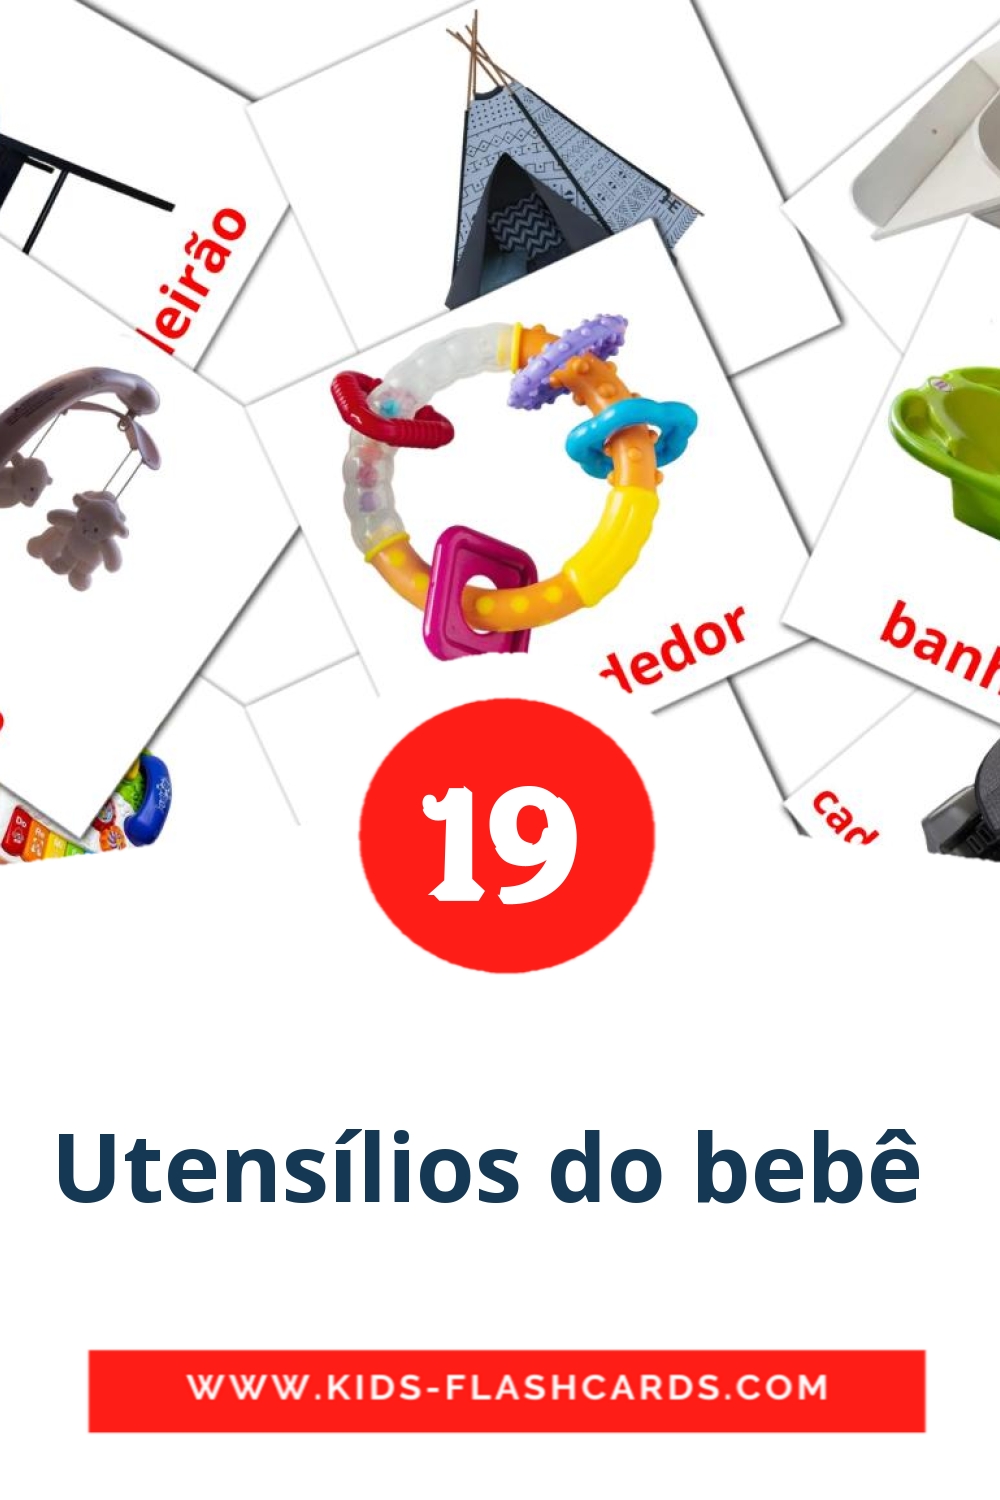 19 tarjetas didacticas de Utensílios do bebê  para el jardín de infancia en amhárico